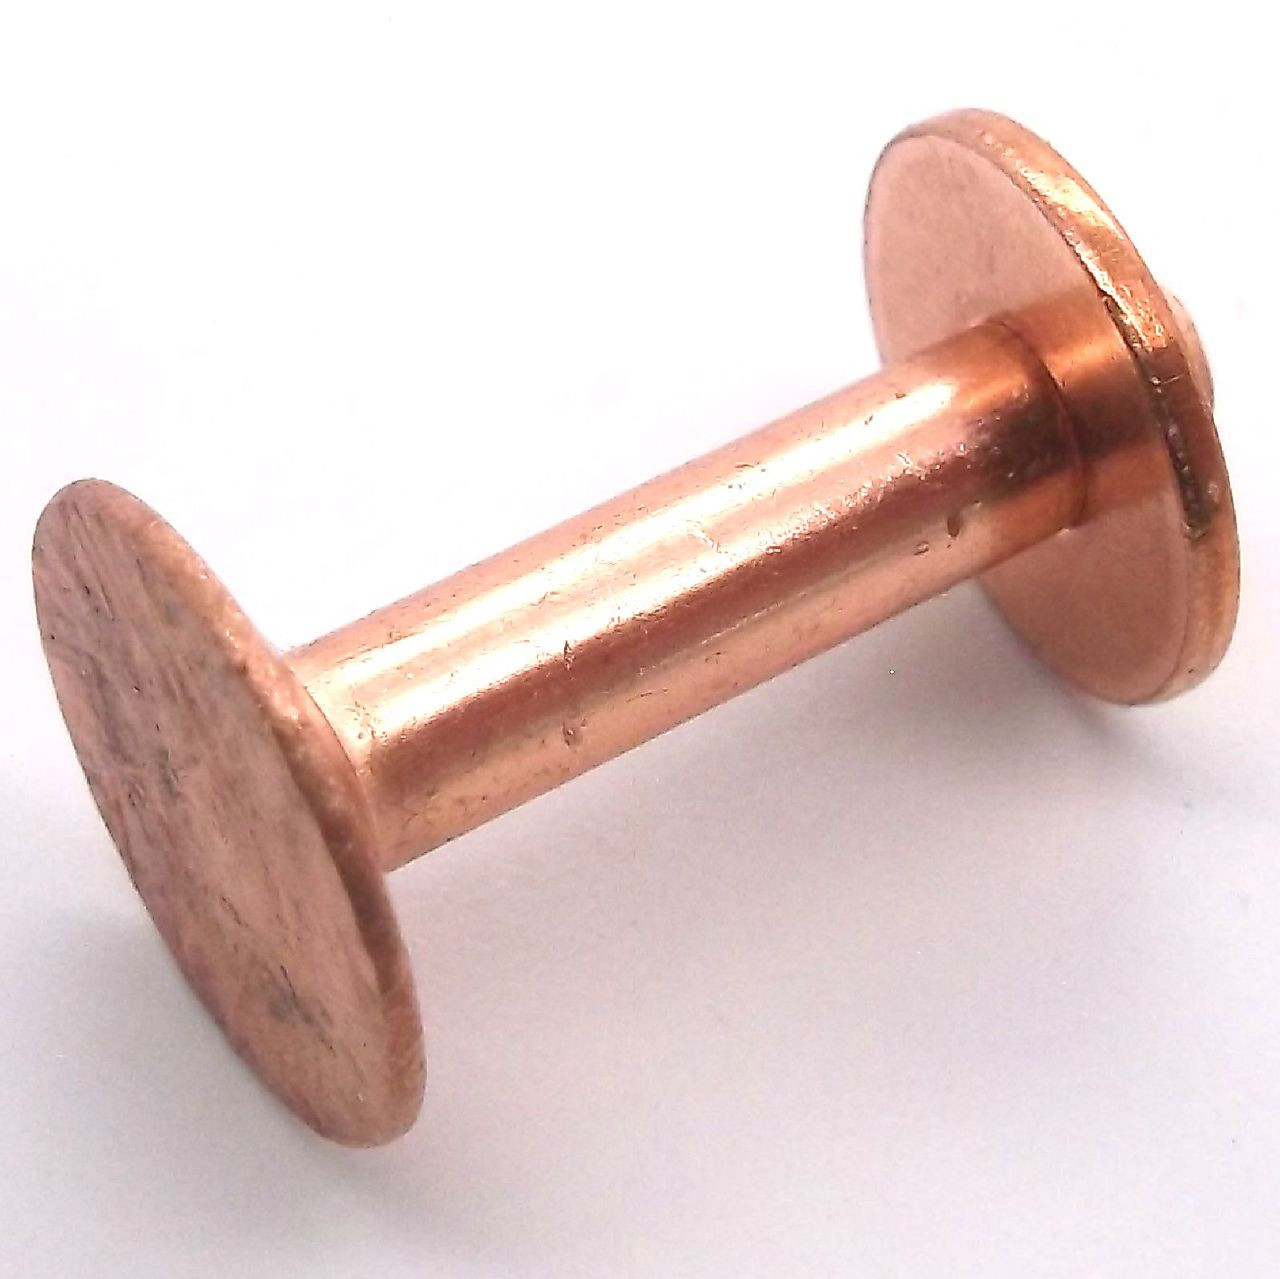 25 Sets Copper Rivet Burrs Washer,3/4 Inch Long Leather Copper Rivet  Fastener,for Wallets Leather D